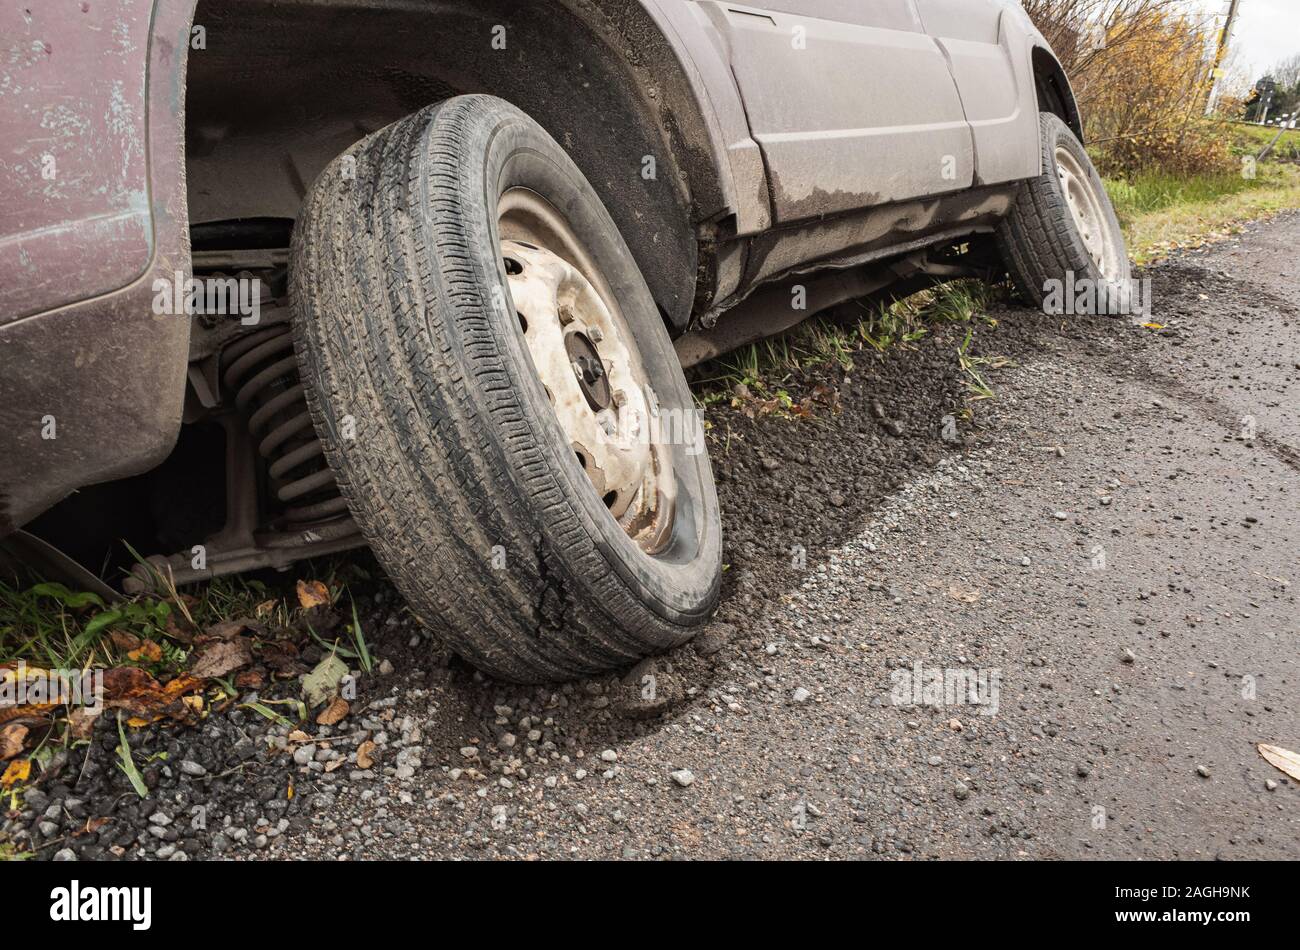 Una vettura in un incidente si trova in un fosso da strada rurale di giorno, close up photo ow ruota anteriore Foto Stock